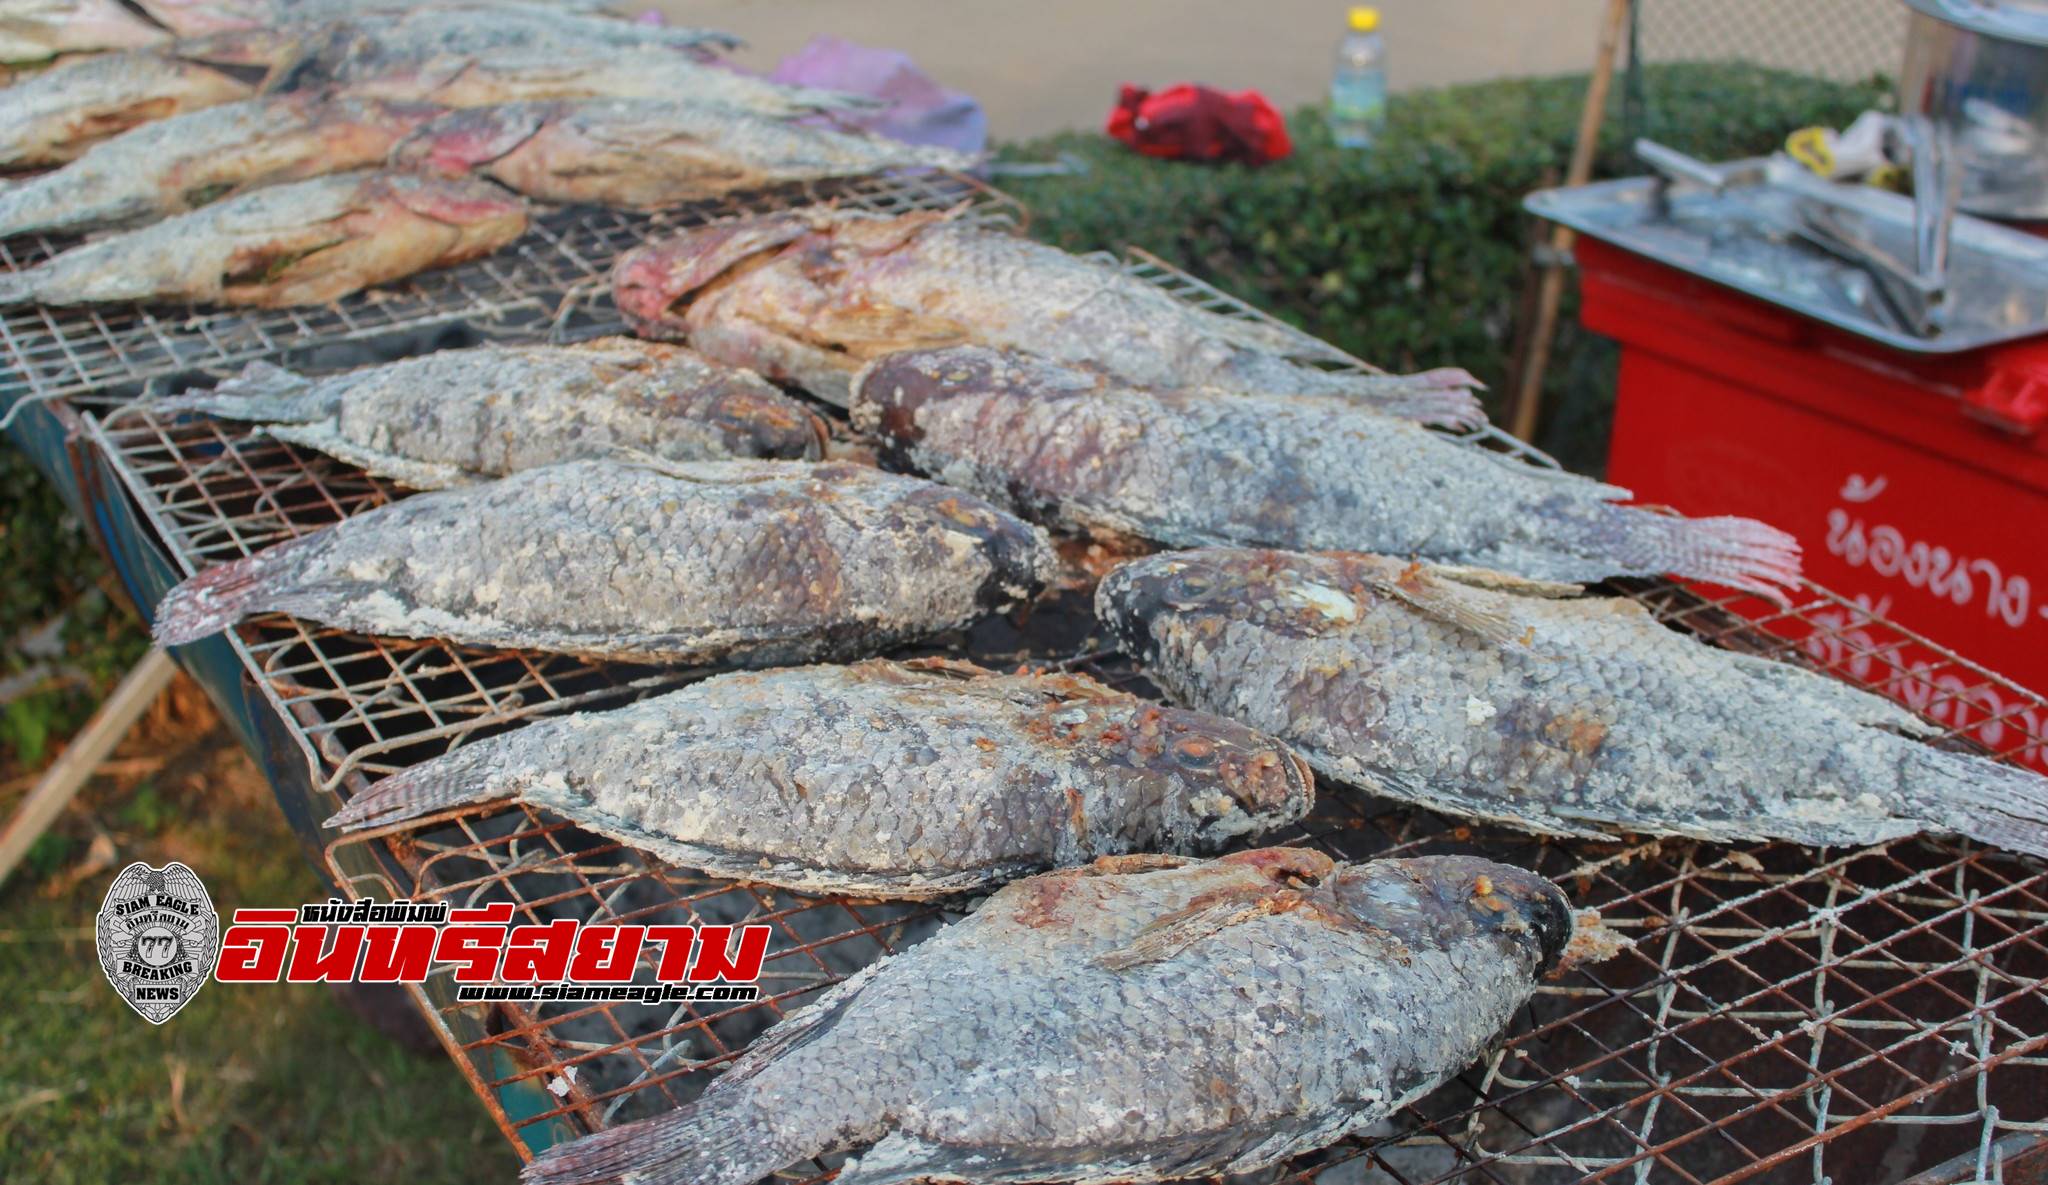 เพชรบุรี-ชวนเที่ยวงาน “เทศกาลกินปลา พาเที่ยวแก่งกระจาน “